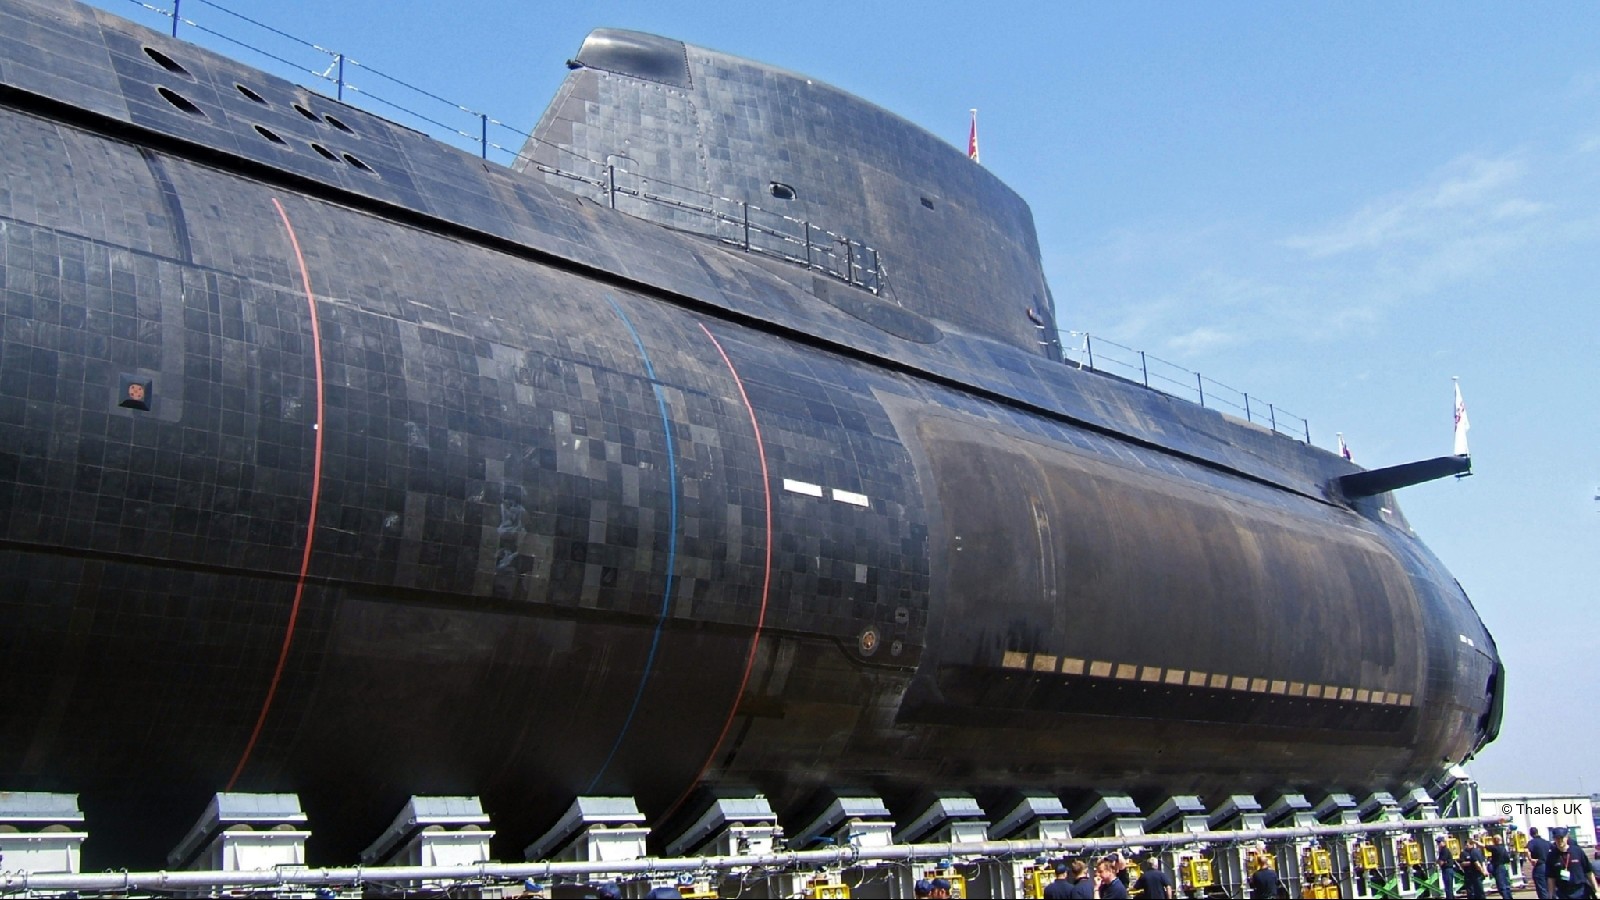 s119 hms astute s-119 attack submarine ssn hunter killer royal navy 25